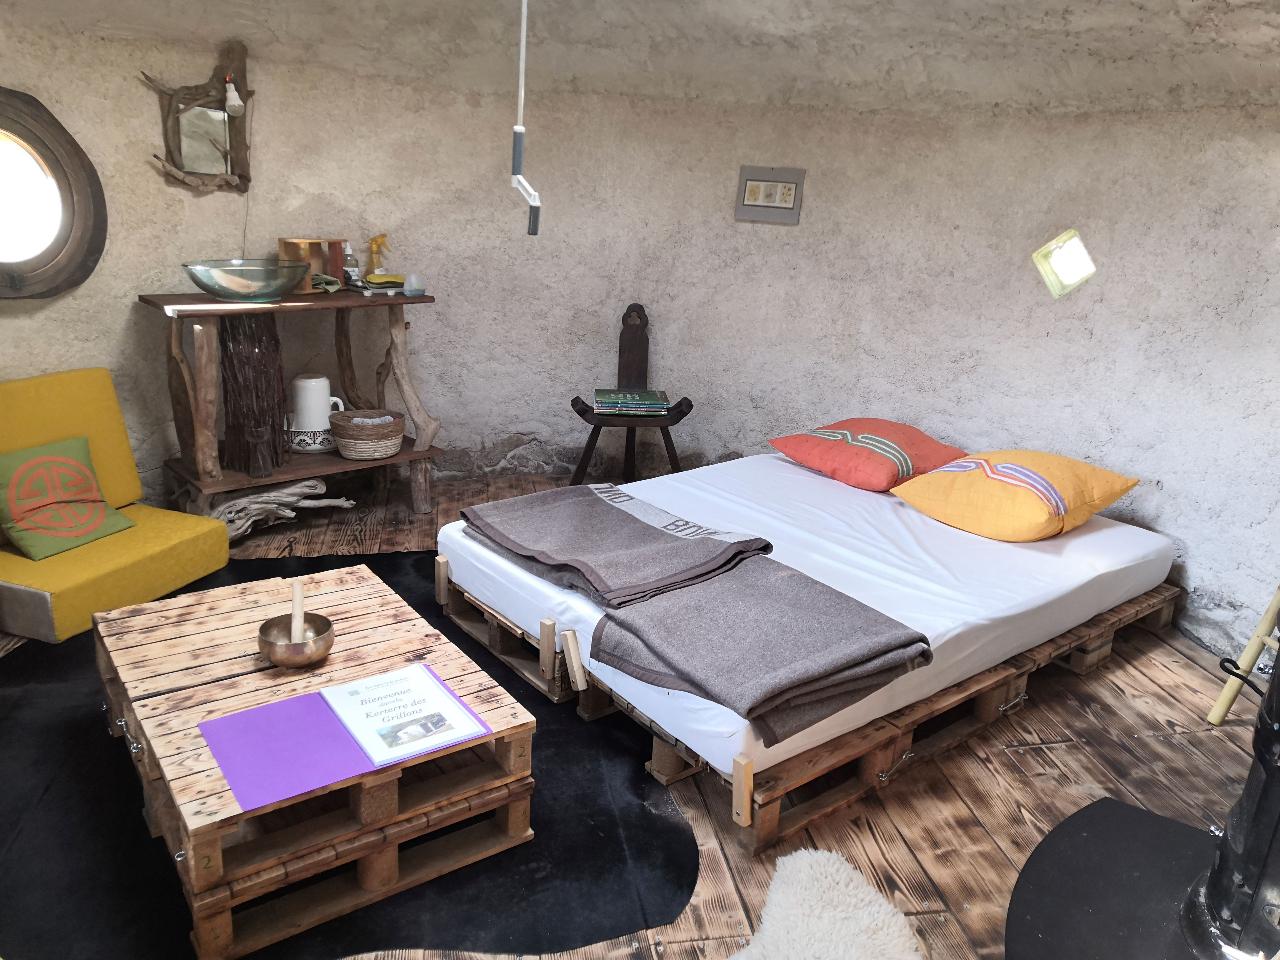 Hôte GreenGo: Les loges de la nature - Nuits en Kerterre pour vivre confortablement la simplicité en pleine nature - Image 13